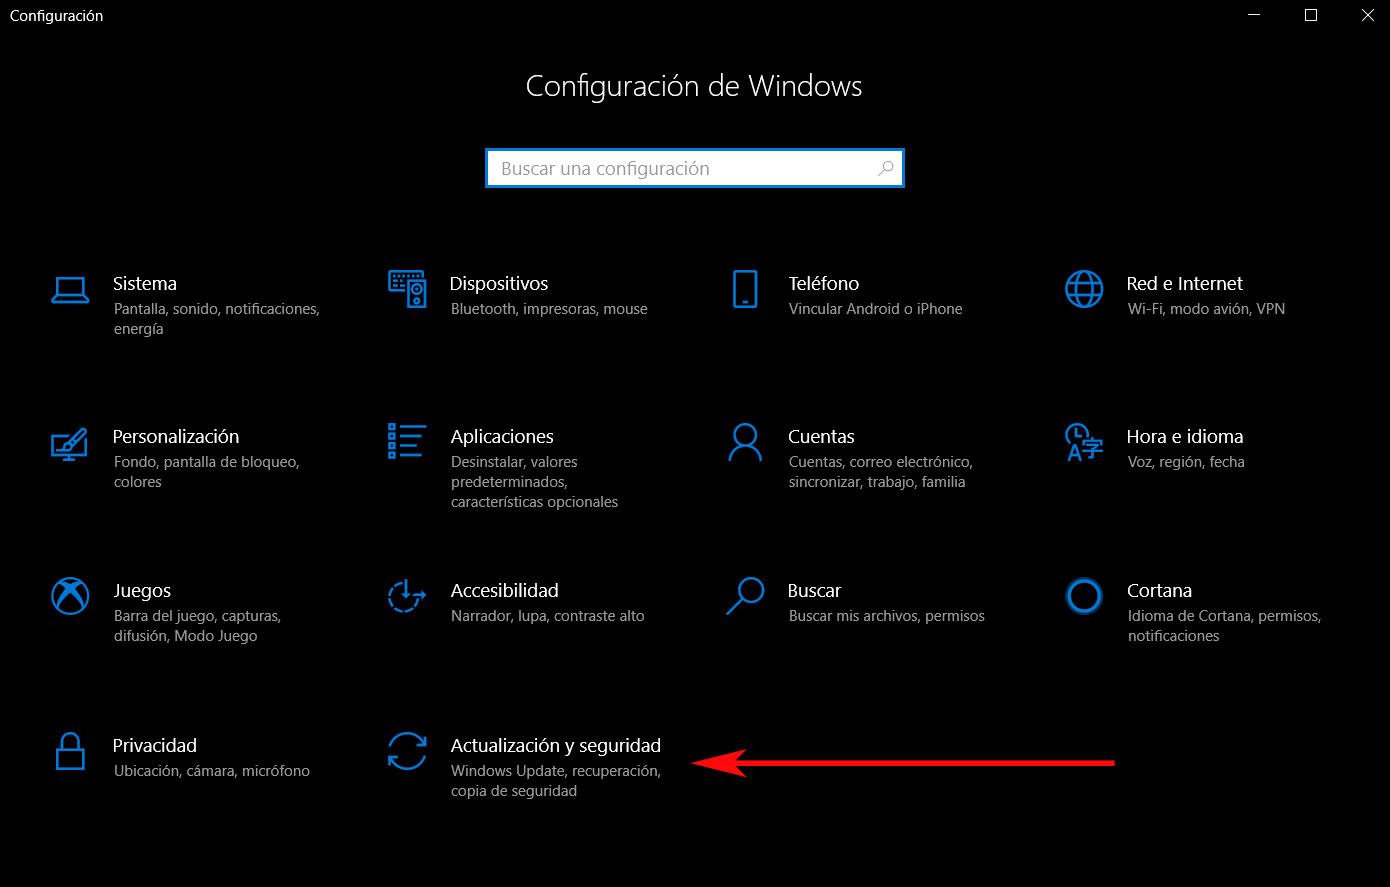 Copia de seguridad Windows 10